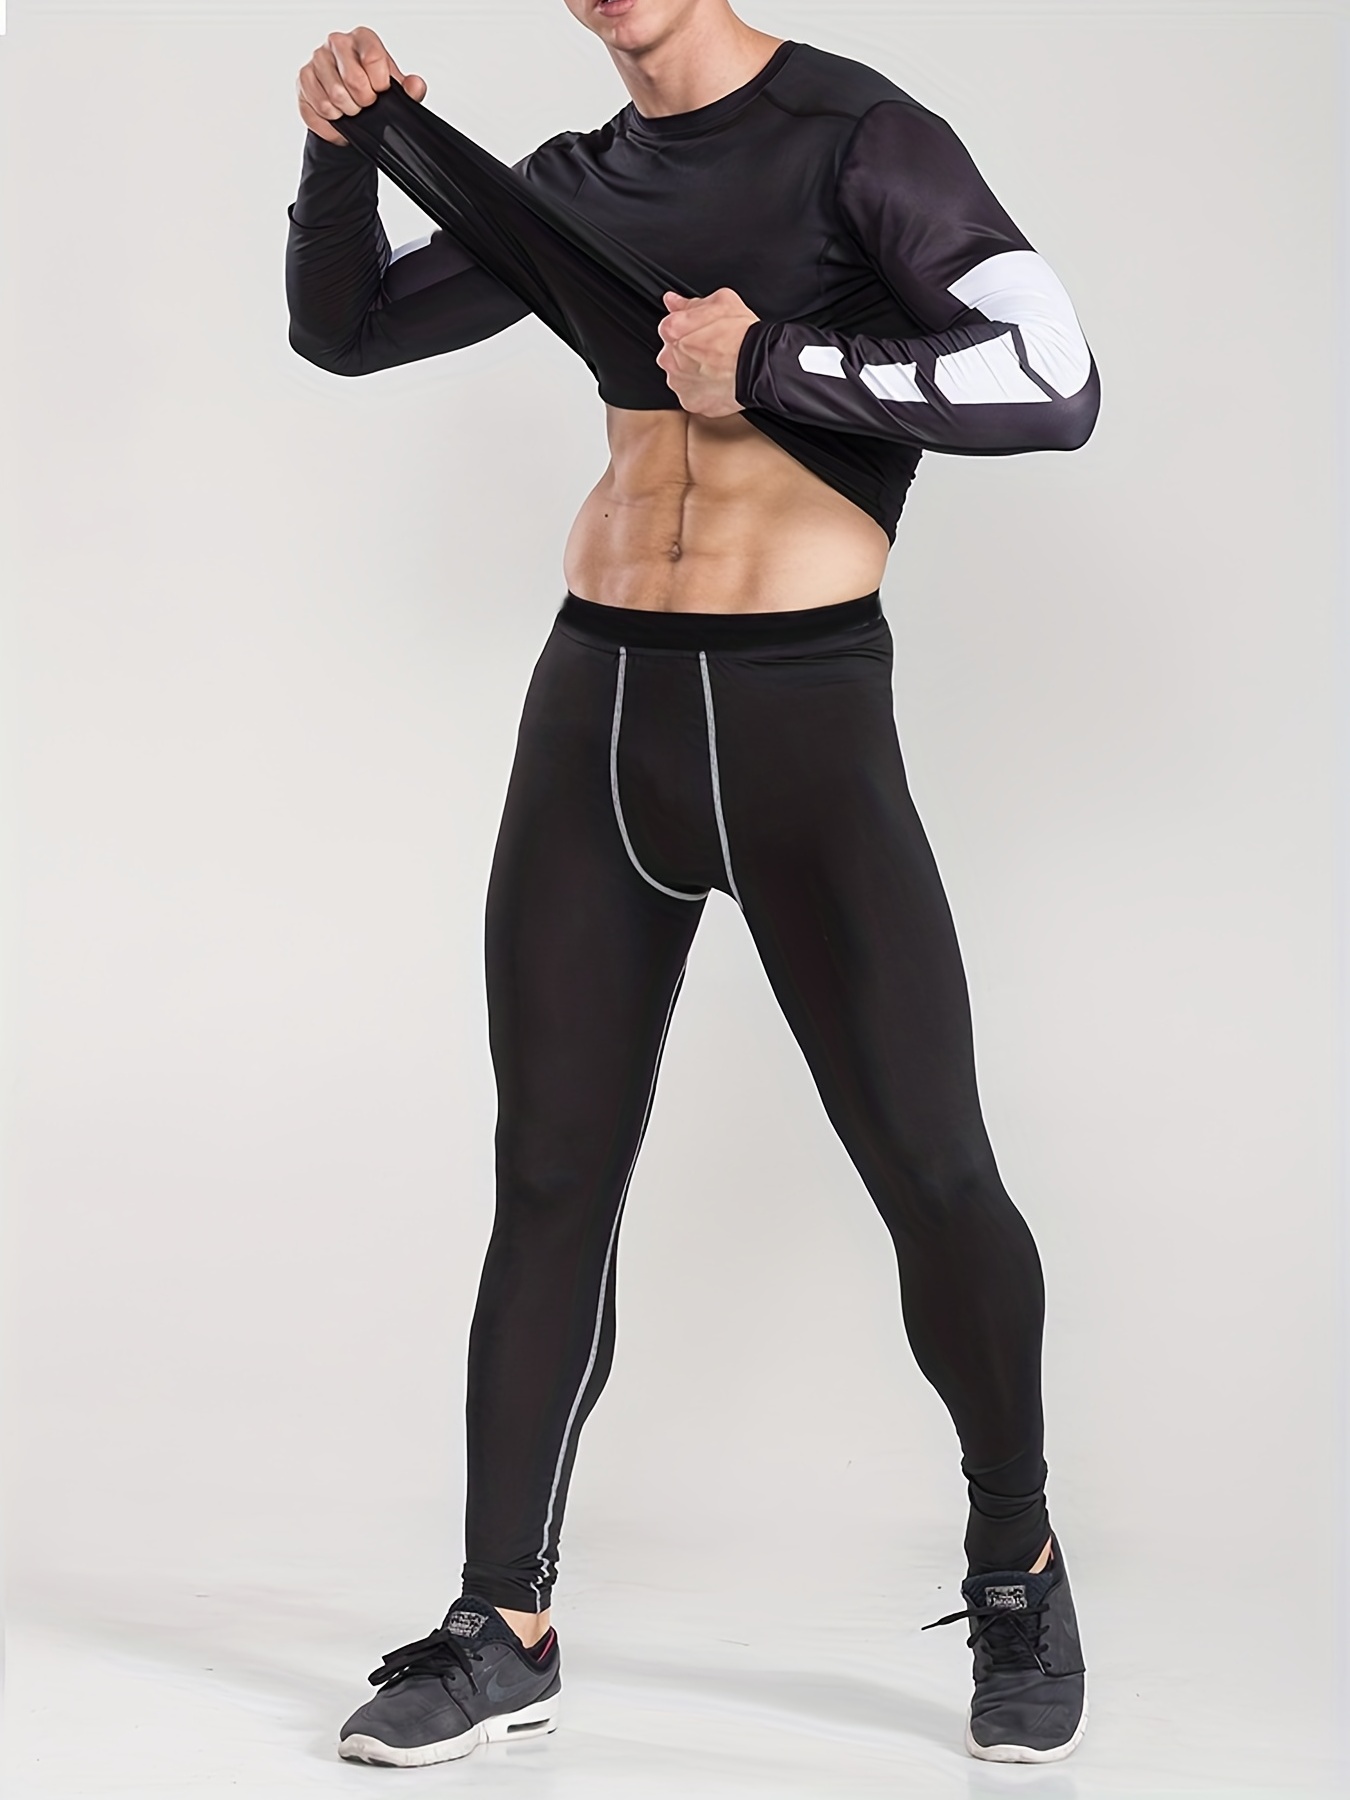 Pantalones deportivos de nailon para mujer, leggings deportivos para  entrenamiento, gimnasio, fitness, mallas de invierno para correr (color  negro